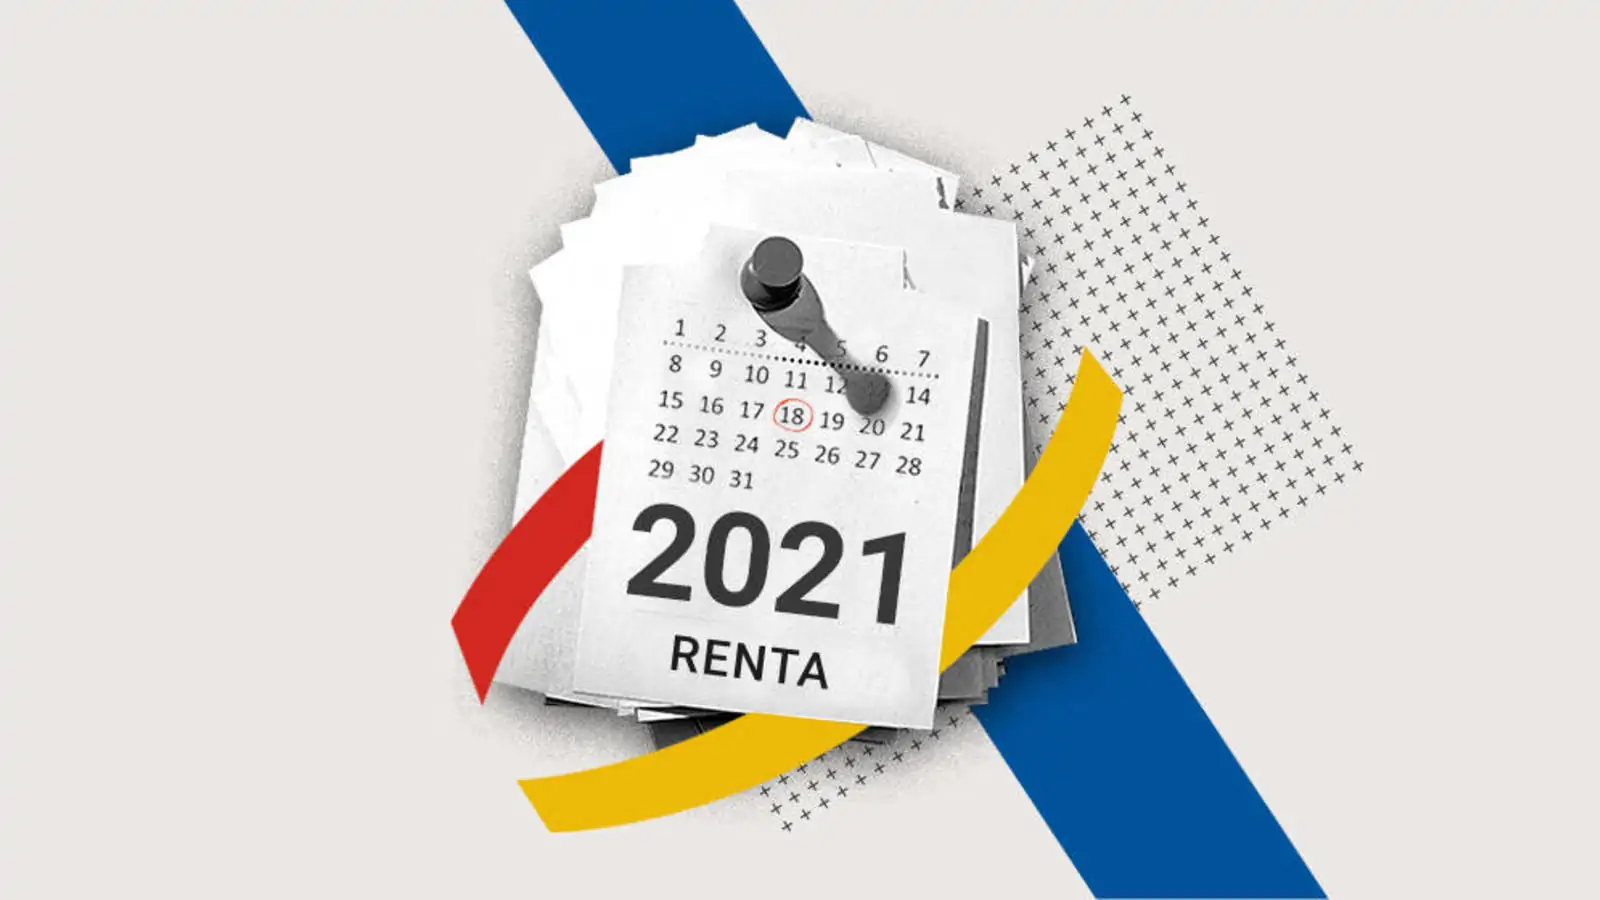 Campaña de Renta 2021: Calendario y aspectos claves